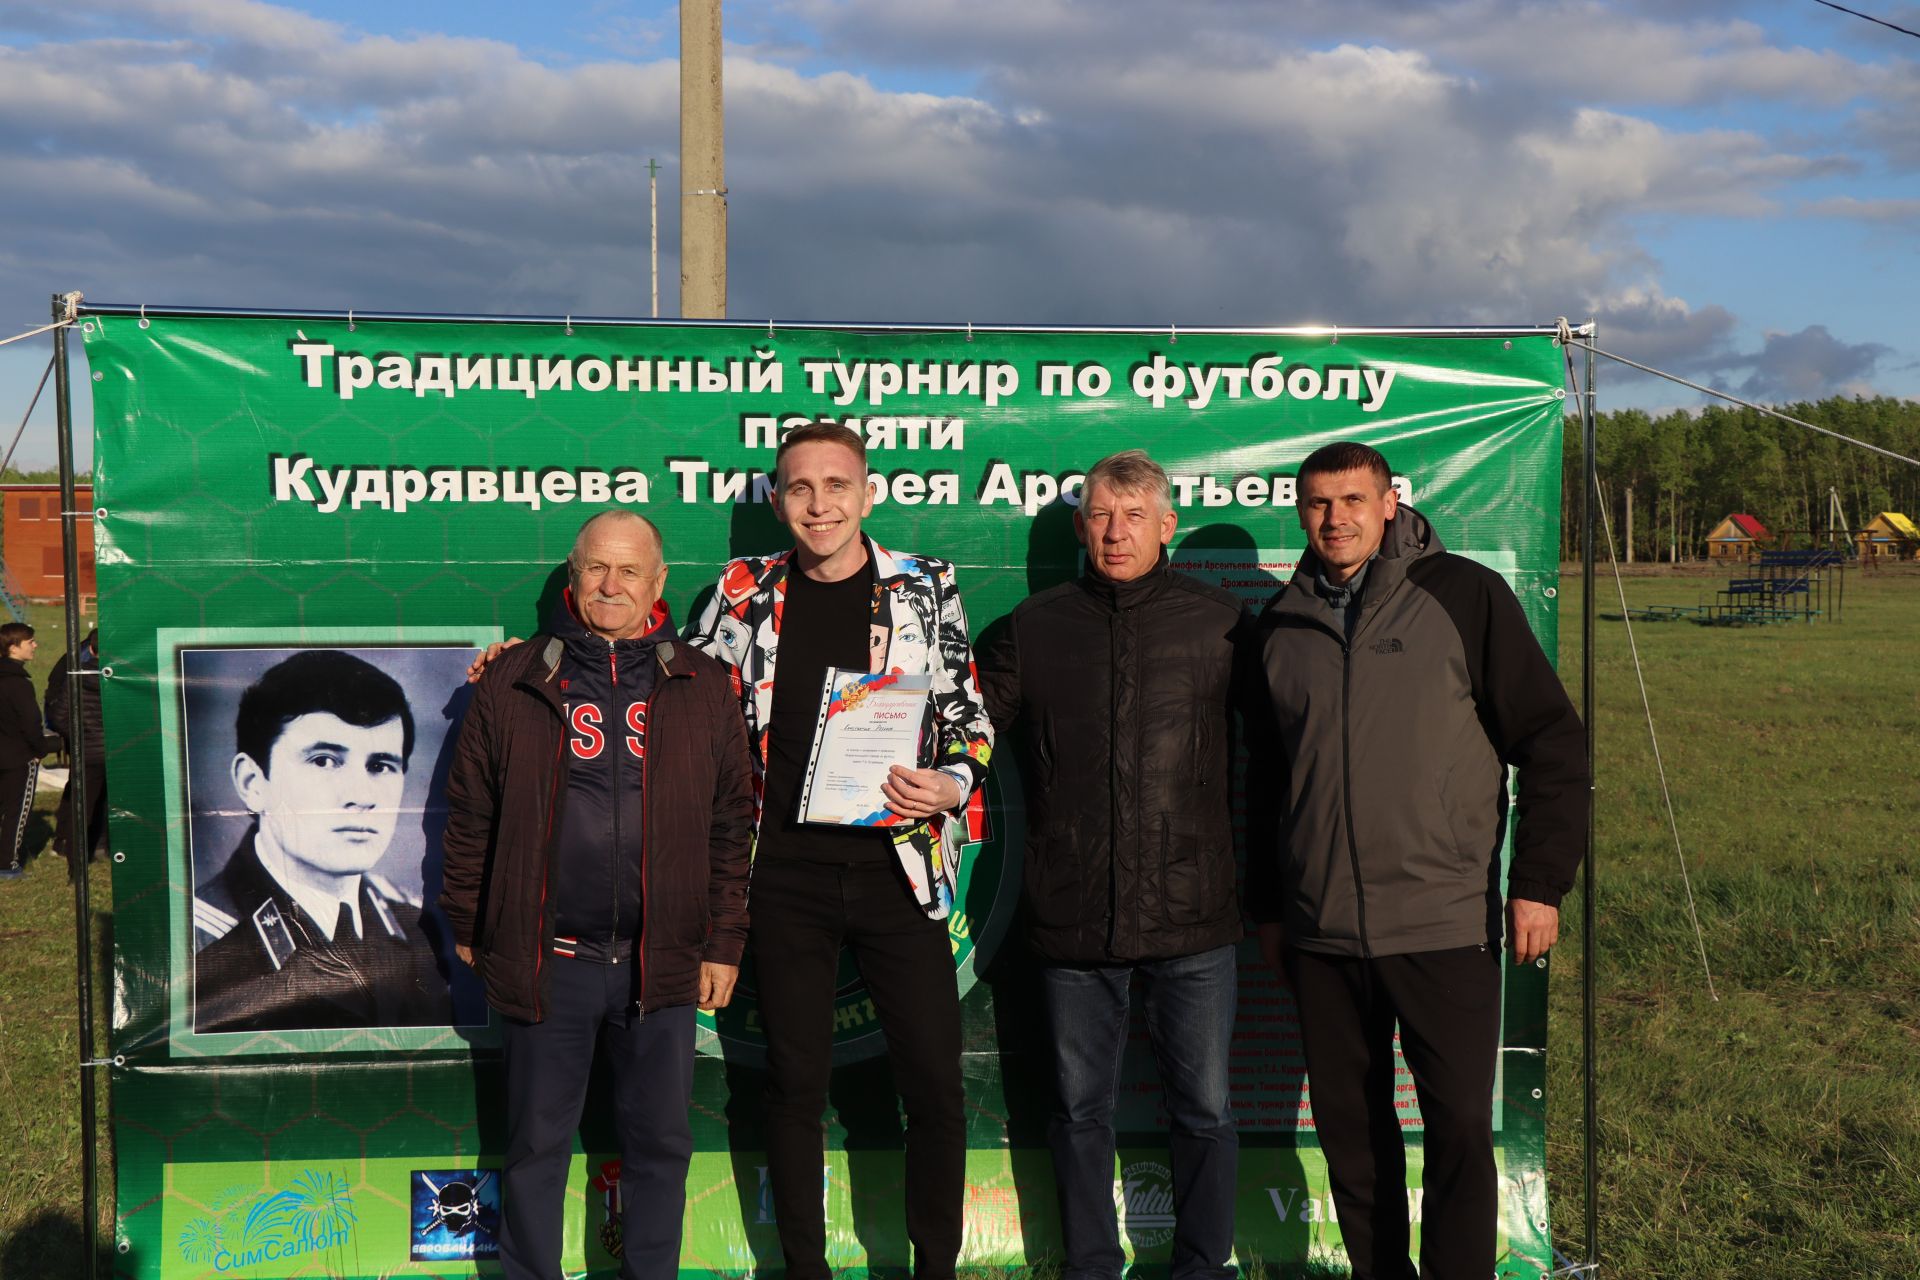 Дрожжановский турнир по футболу памяти Кудрявцева Тимофея Арсентьевича состоялся: победители награждены